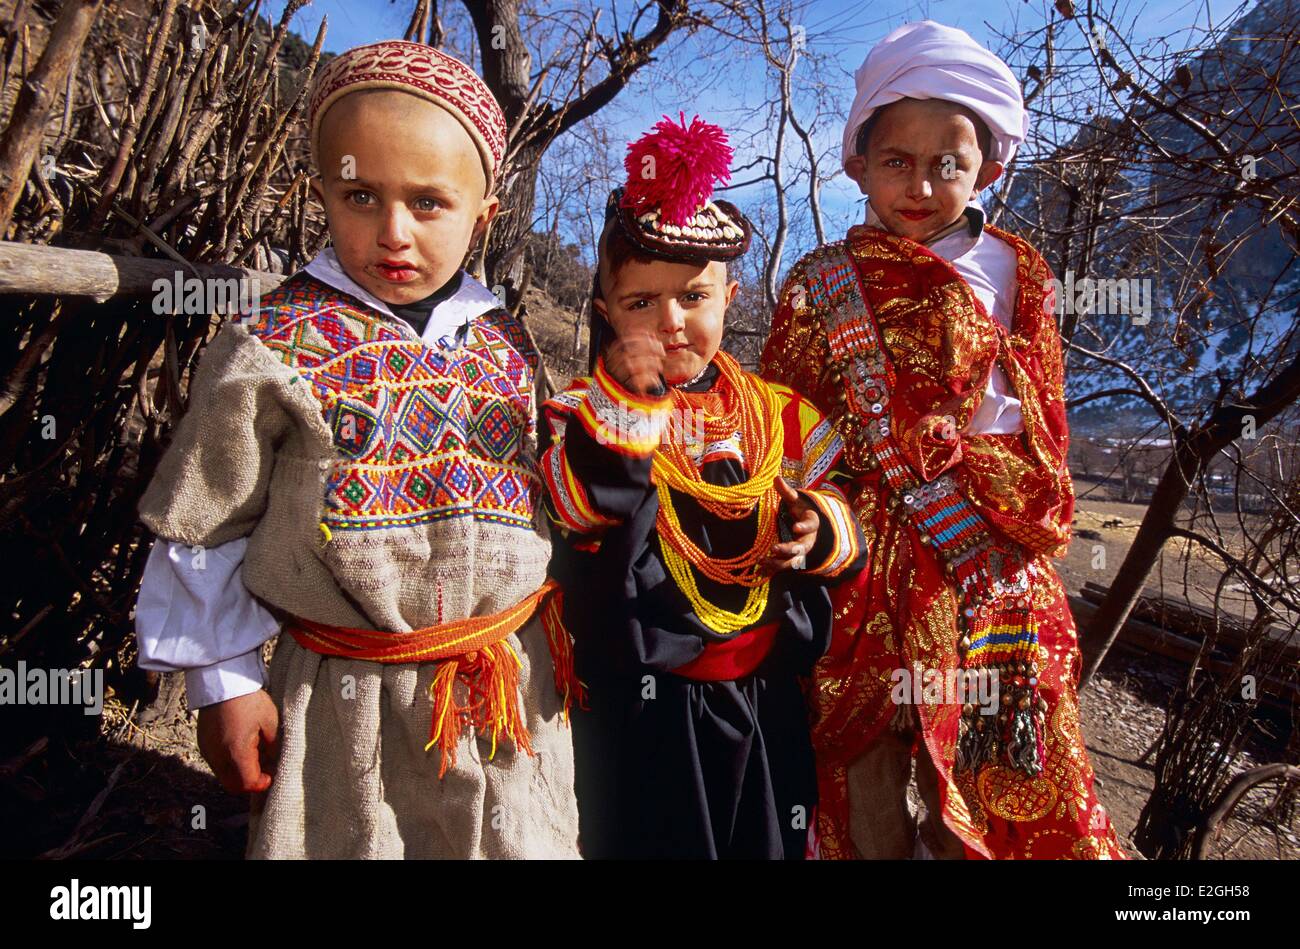 Vallées Kalash Khyber Pakhtunkhwa au Pakistan Bumburet valley petit 4 ans, fille, couverts de sa première robe et chapeau entouré par deux jeunes garçons de 7 ans habillé en berger et guerrier Kalash après leurs rituels initiatiques de mais Sambiak et Tchelik S Banque D'Images